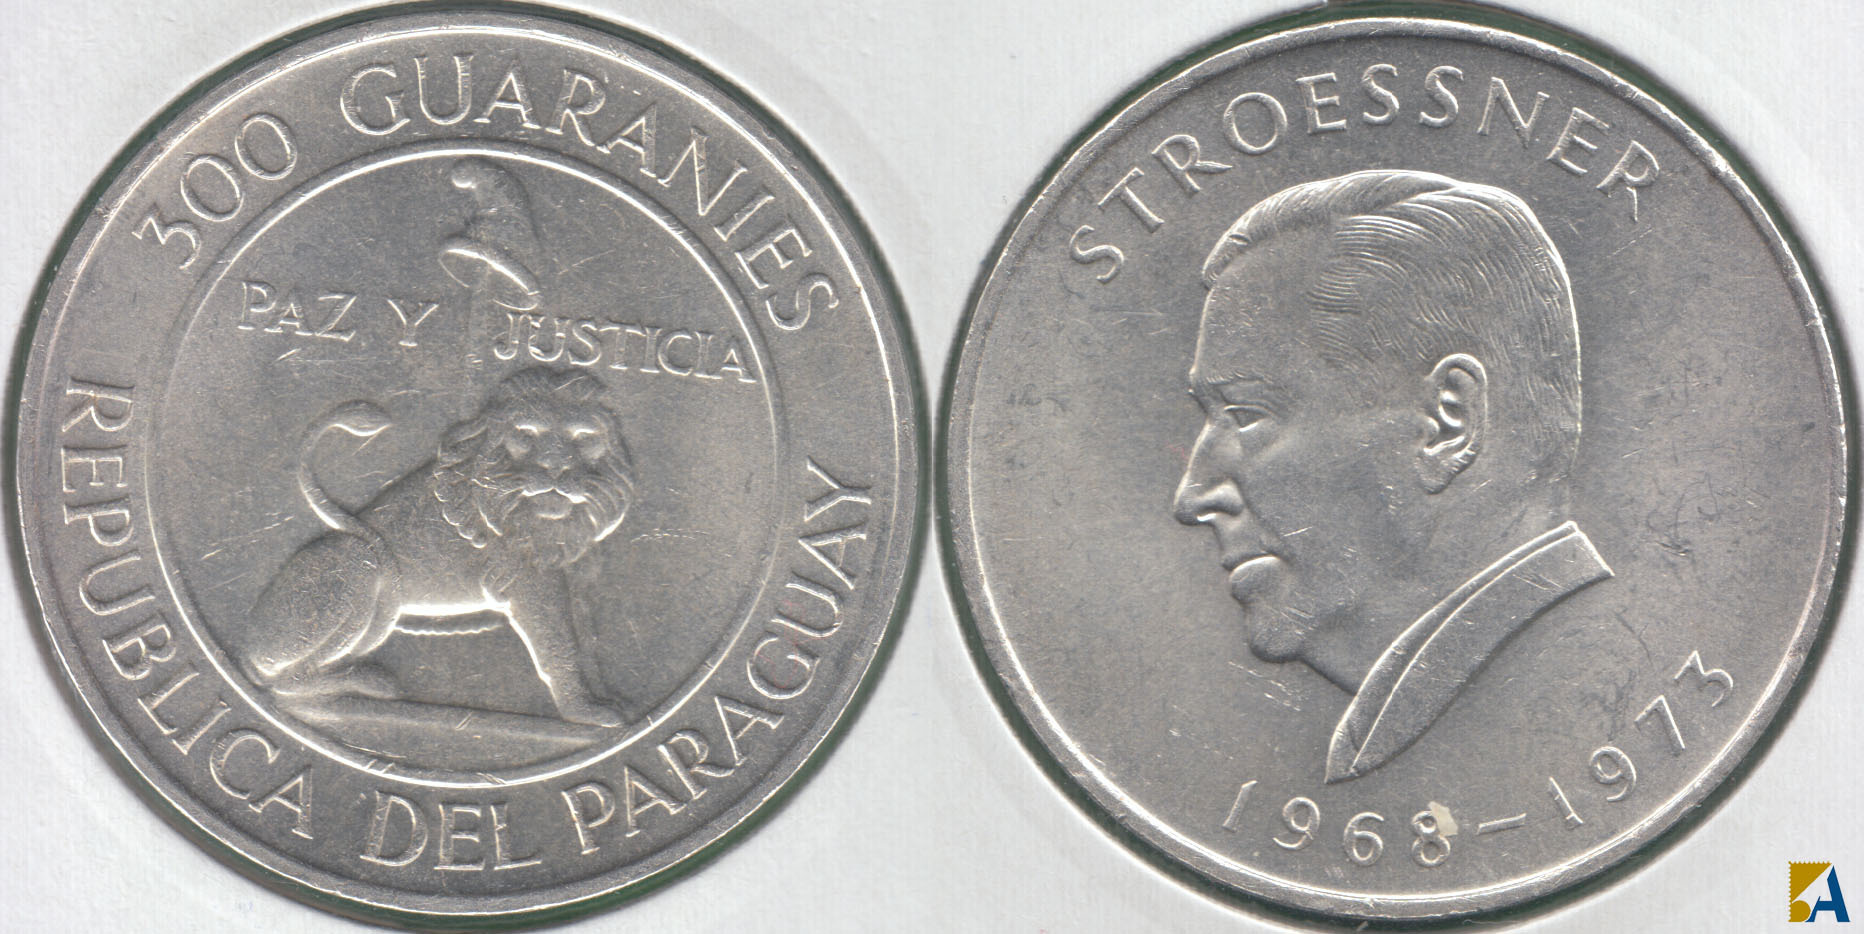 PARAGUAY. 300 GUARANIES DE 1968. PLATA 0.720. (2)